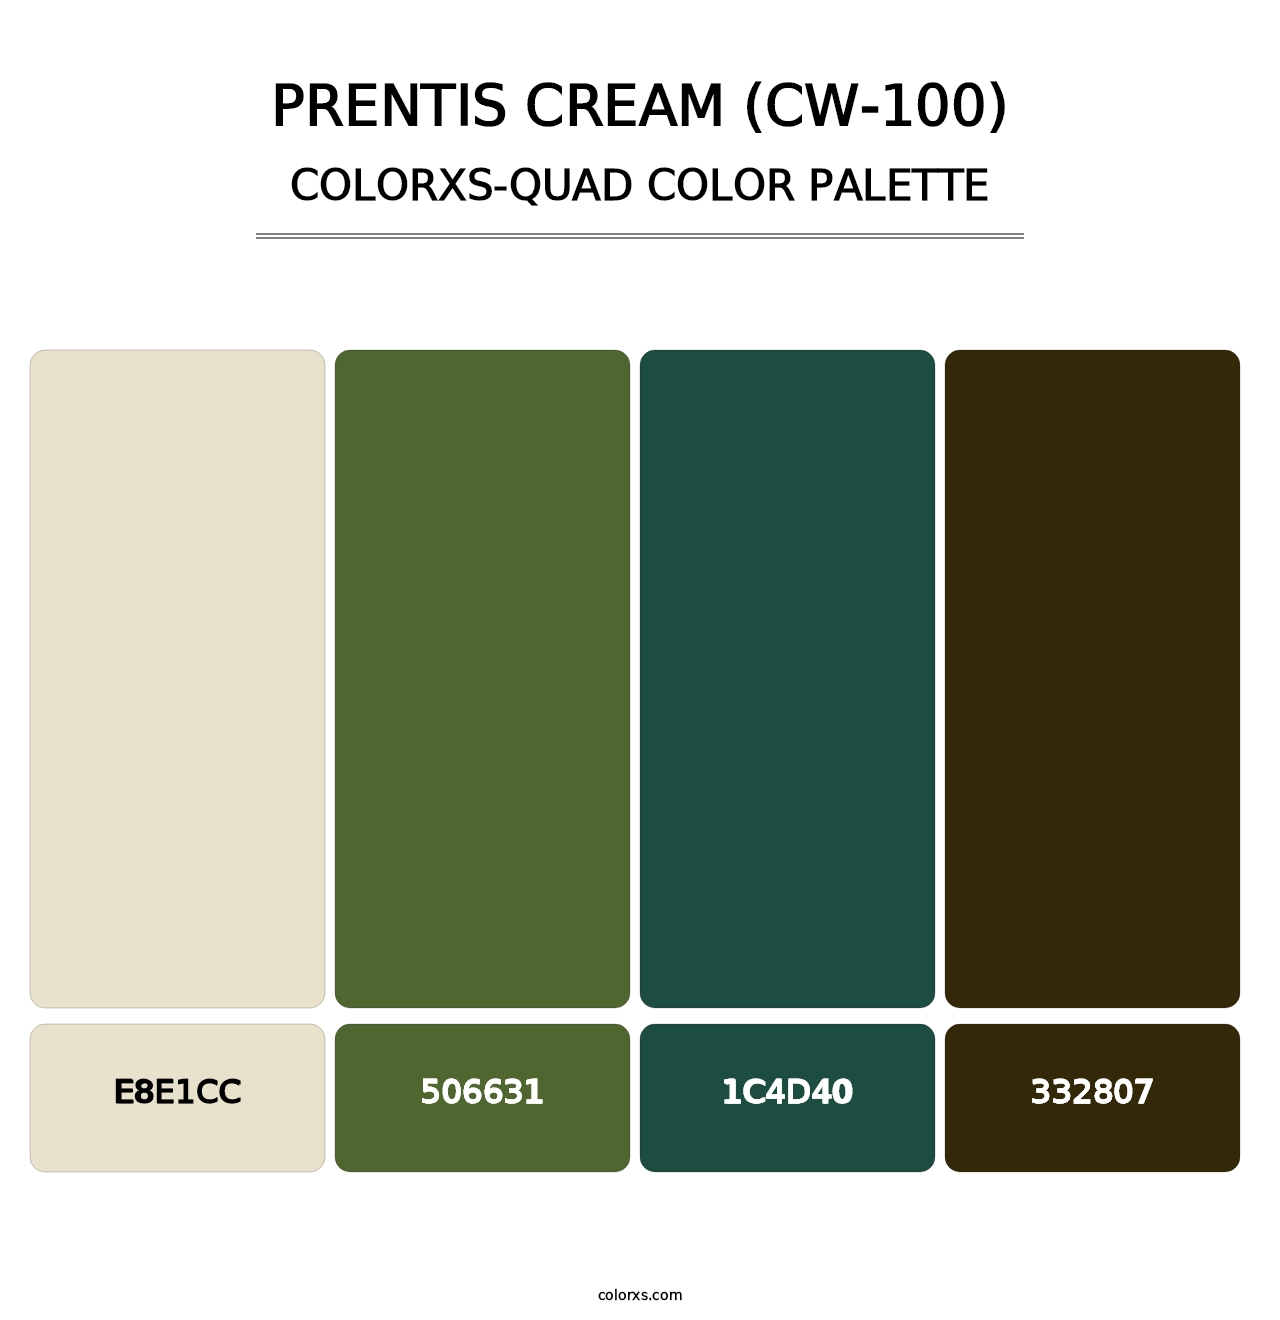 Prentis Cream (CW-100) - Colorxs Quad Palette